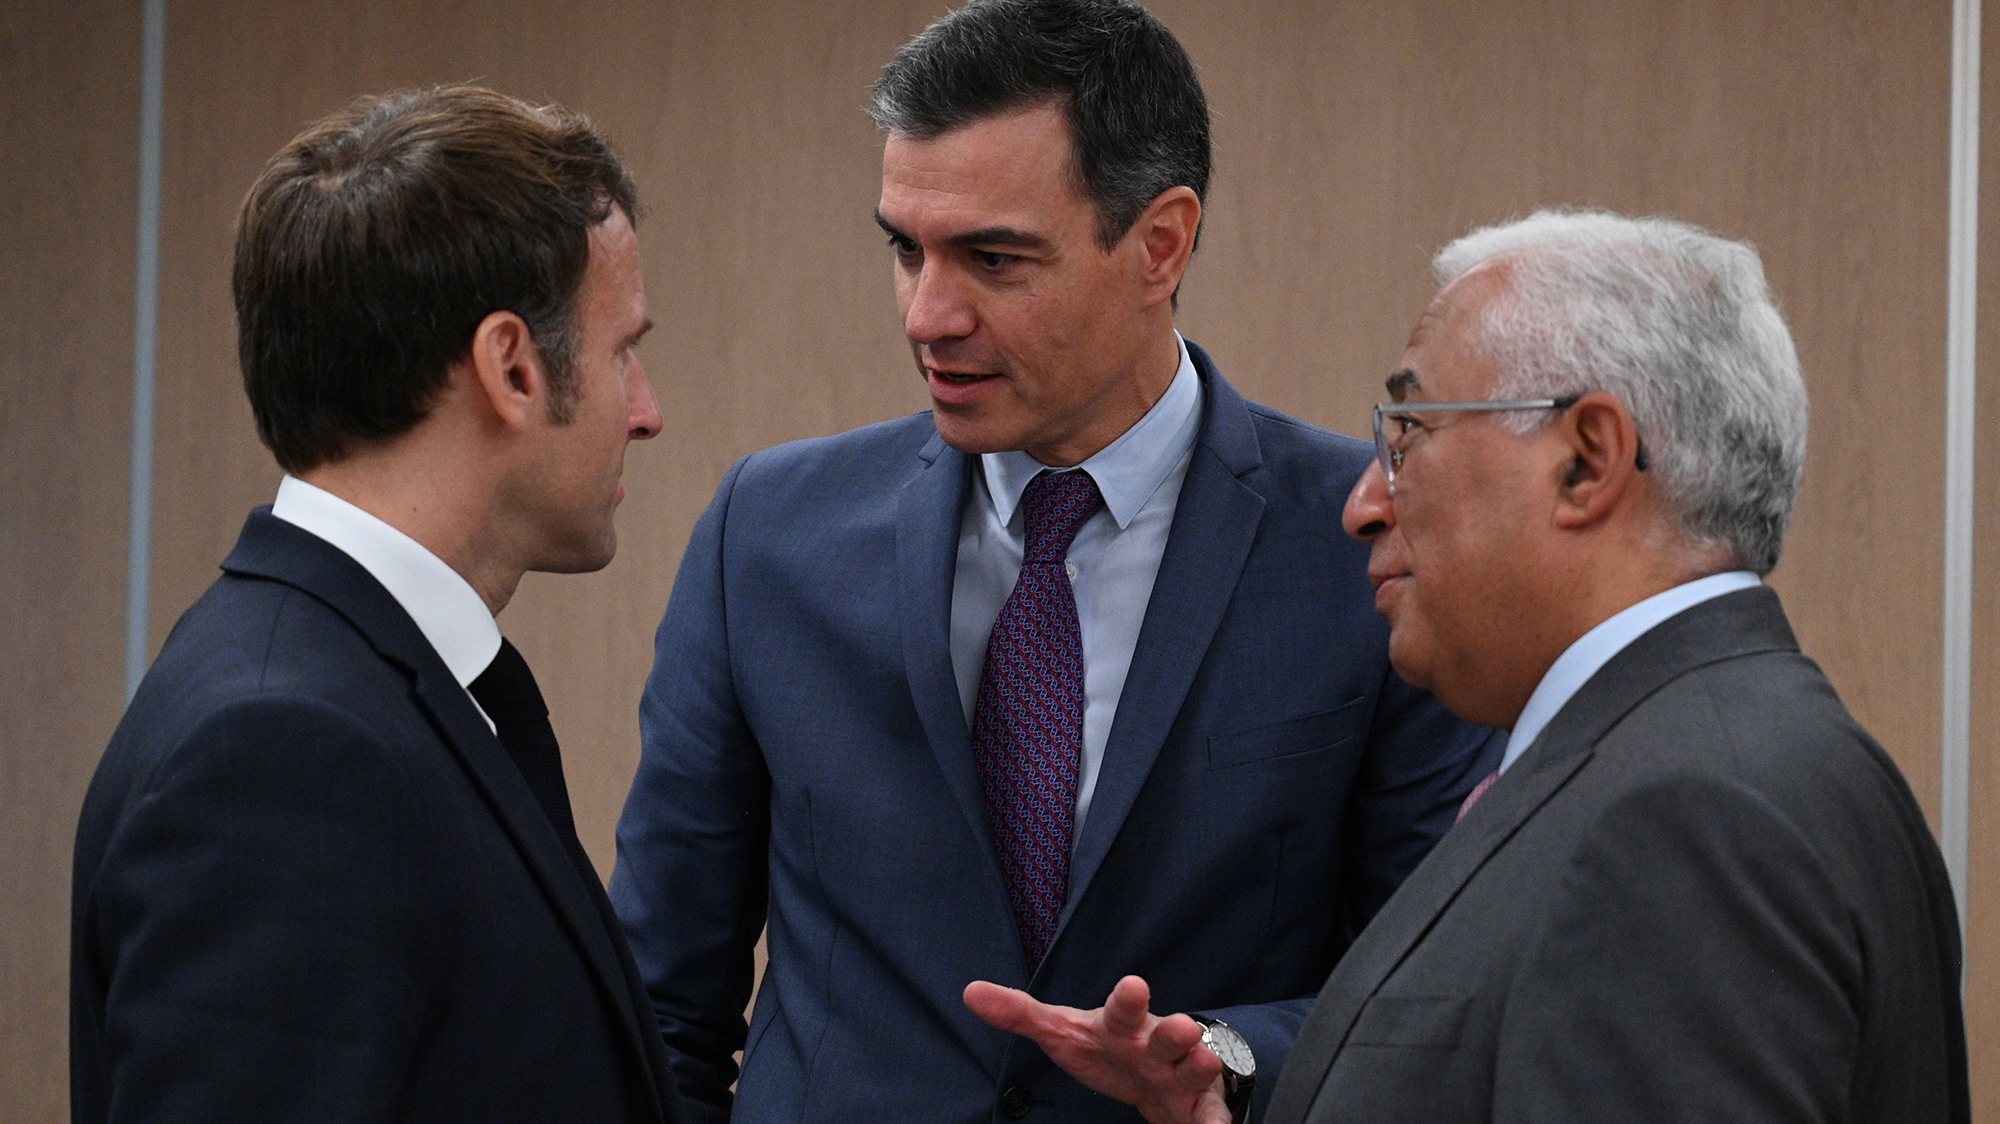 Neste encontro de Alicante estarão os primeiros-ministros de Portugal e Espanha, António Costa e Pedro Sánchez, o Presidente de França, Emmanuel Macron, e a presidente da Comissão Europeia, Ursula von der Leyen